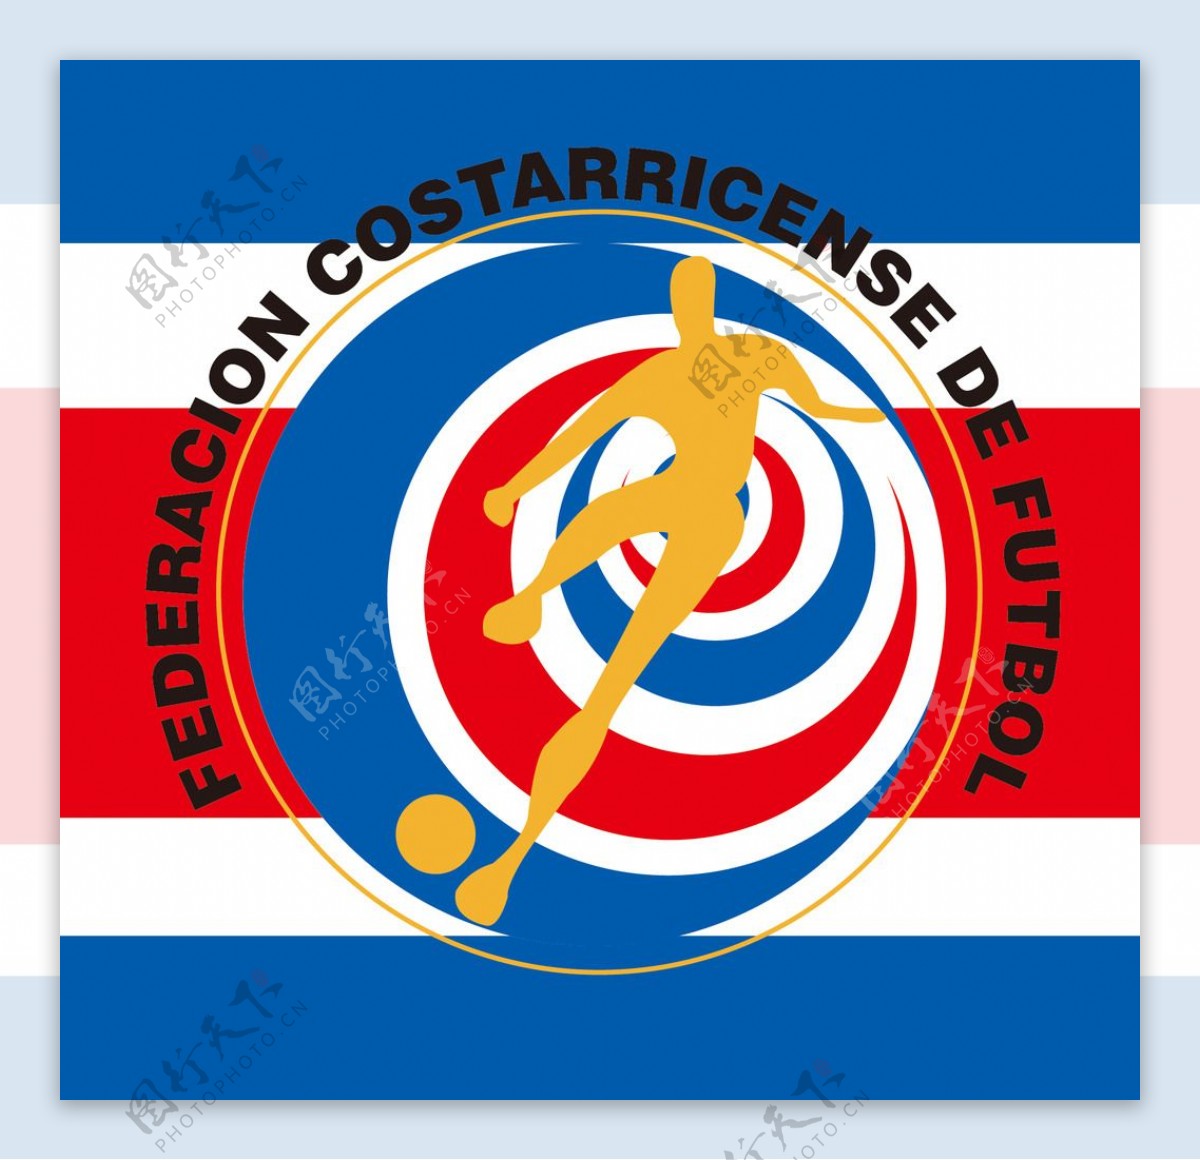 哥斯达黎加队标志图片